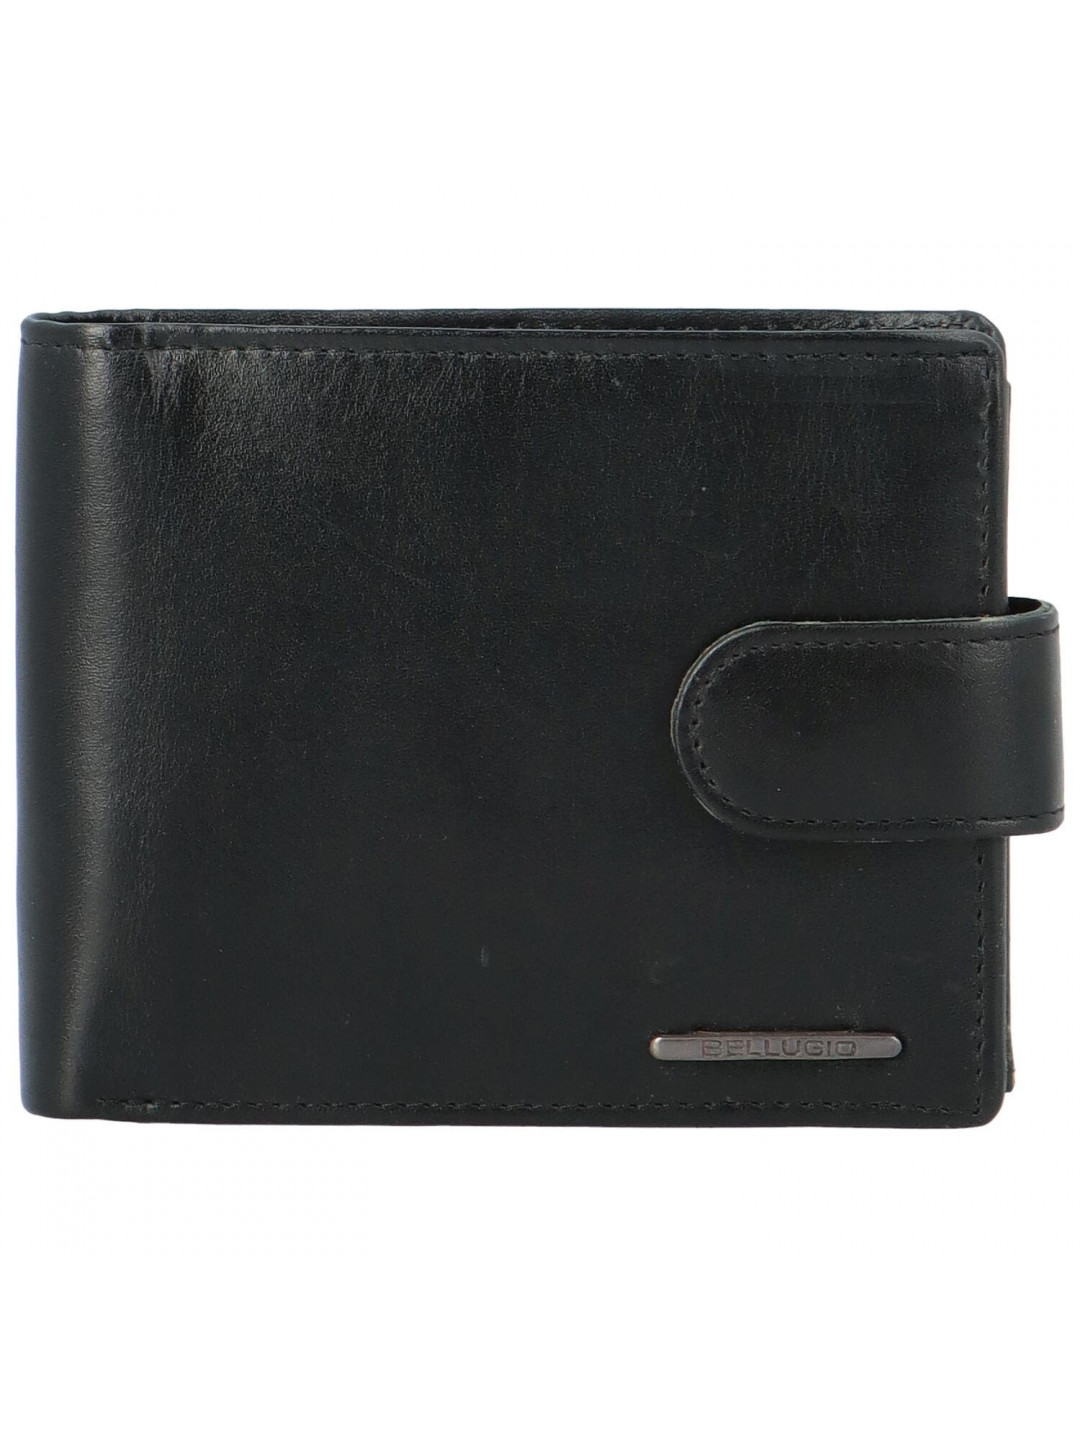 Pánská kožená peněženka Bellugio Levi černá